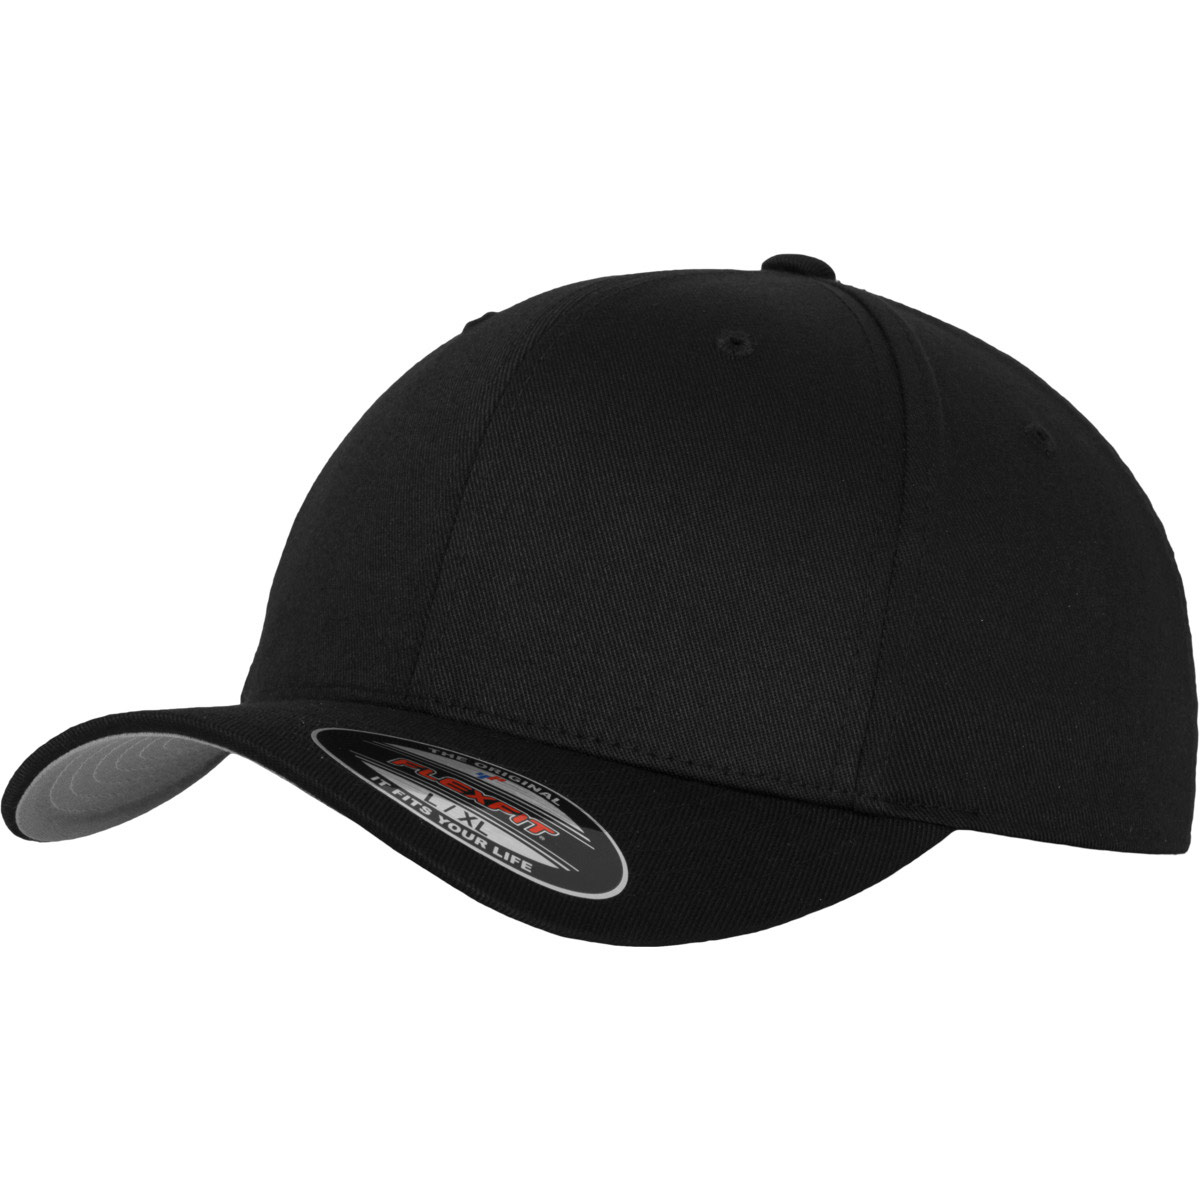 onvoorwaardelijk mezelf Sui Flexfit Wooly Combed black XS/S baseball cap for adults